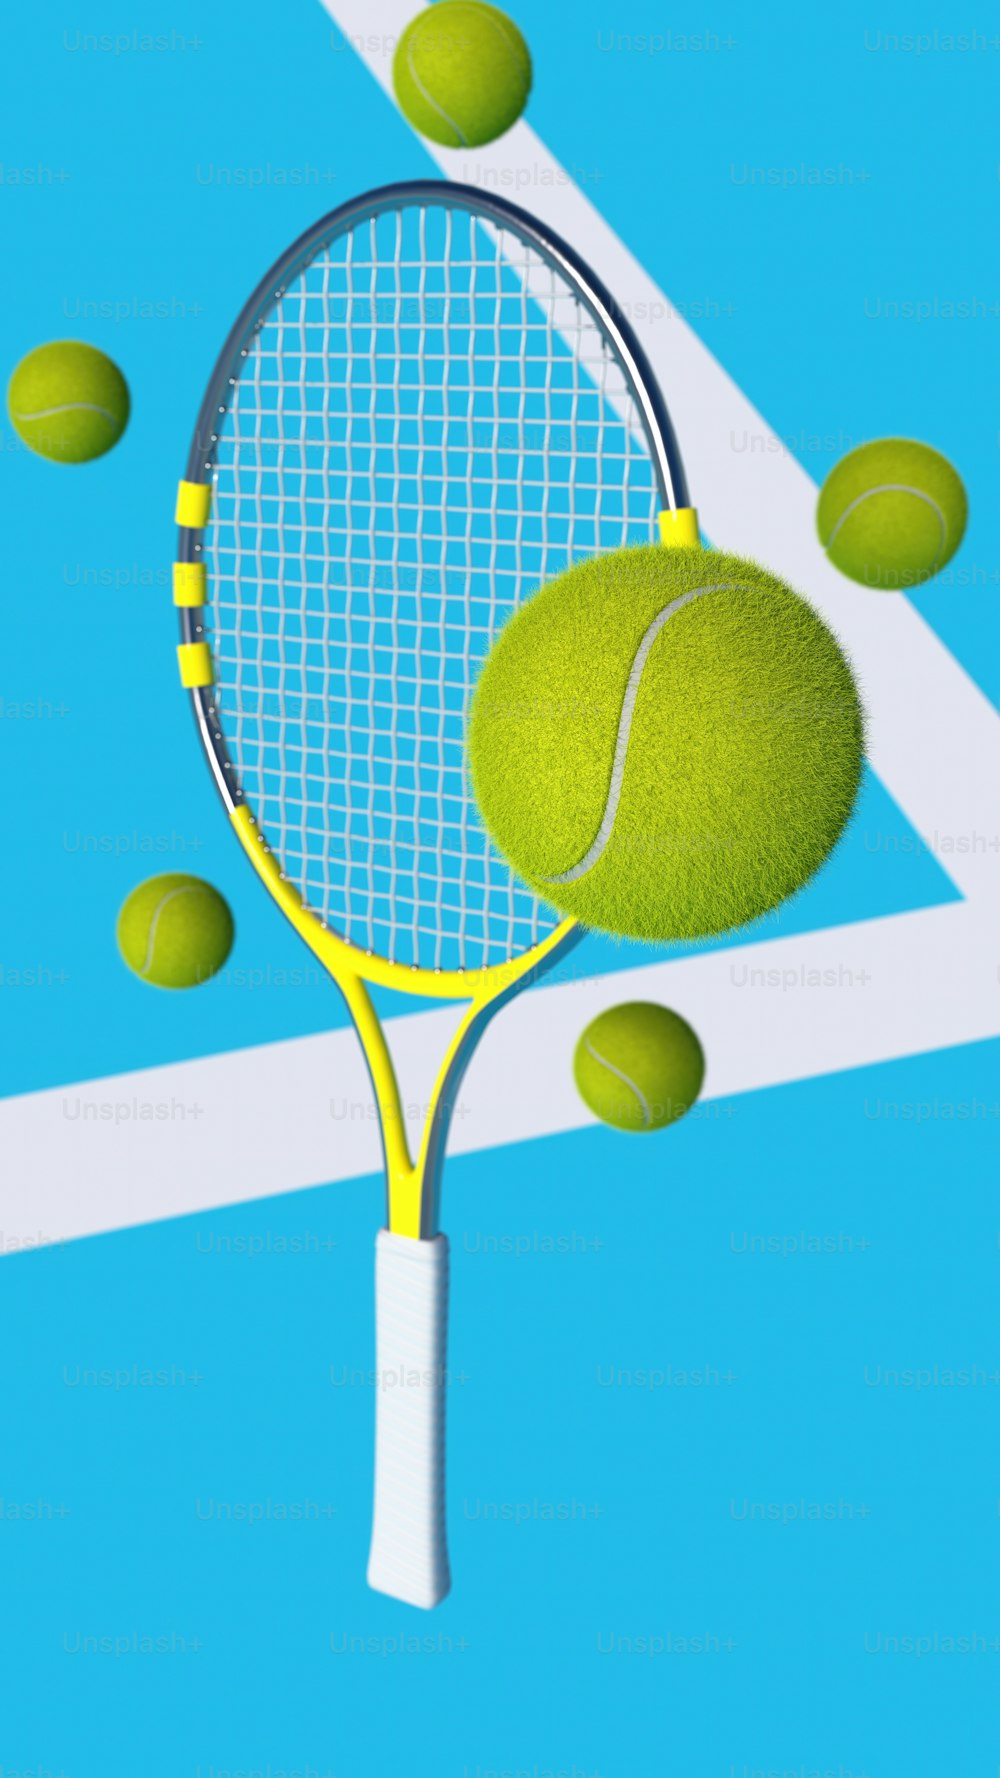 una raqueta de tenis golpeando una pelota de tenis